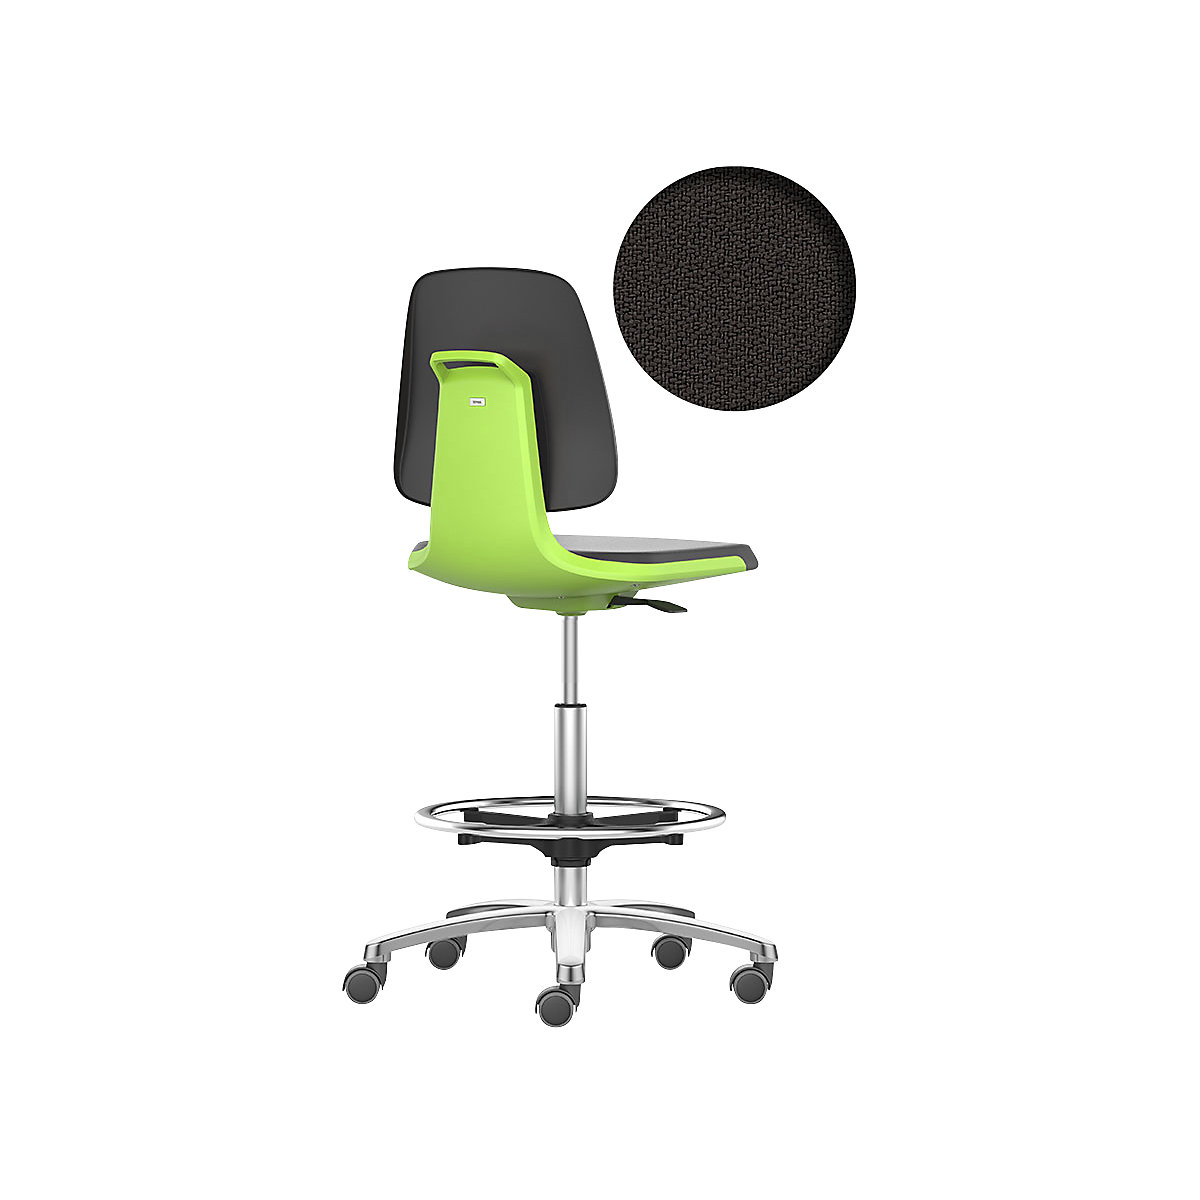 Obrotowe krzesło do pracy LABSIT – bimos, wysokie krzesło z rolkami hamującymi i podpórką na stopy, siedzisko z obiciem z materiału, zielony-17